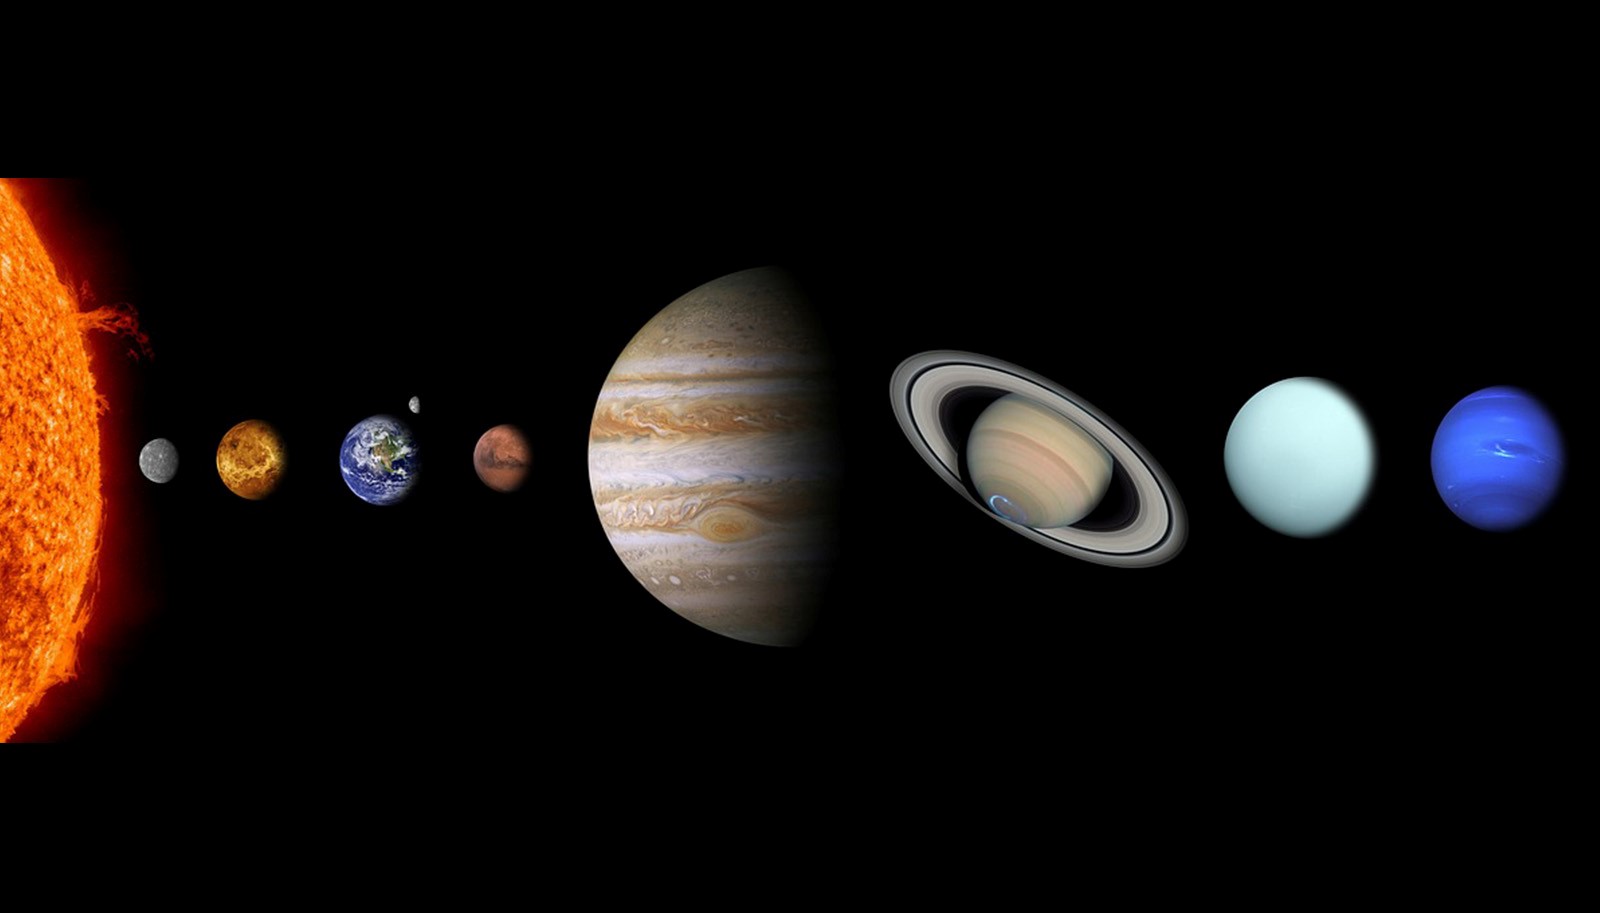 Apprendre le système solaire et ses planètes aux enfants - Family Sphere